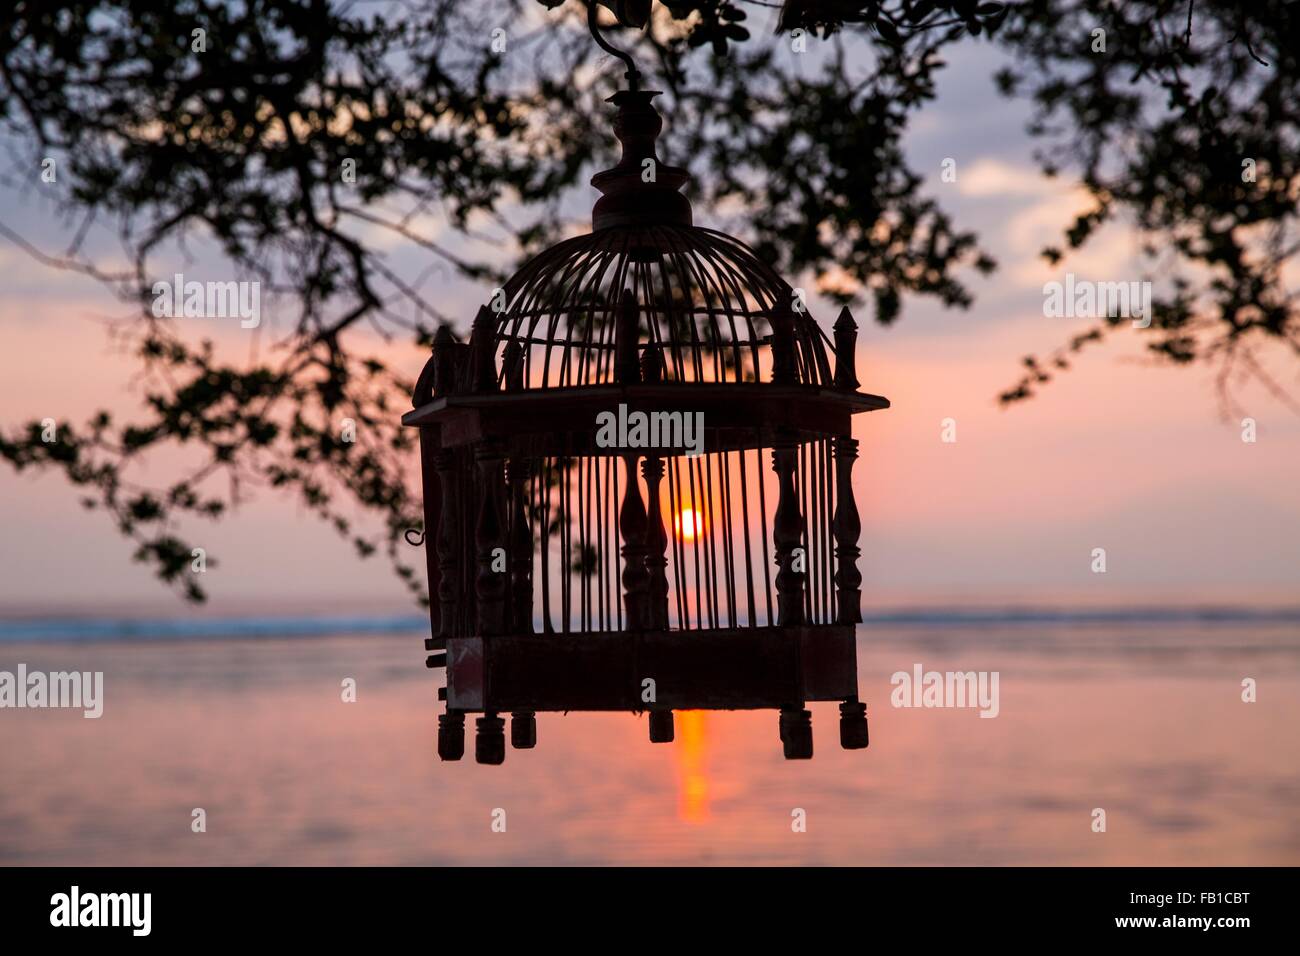 Stagliano vuoto birdcage appeso da albero al tramonto, Gili Trawangan, Lombok, Indonesia Foto Stock